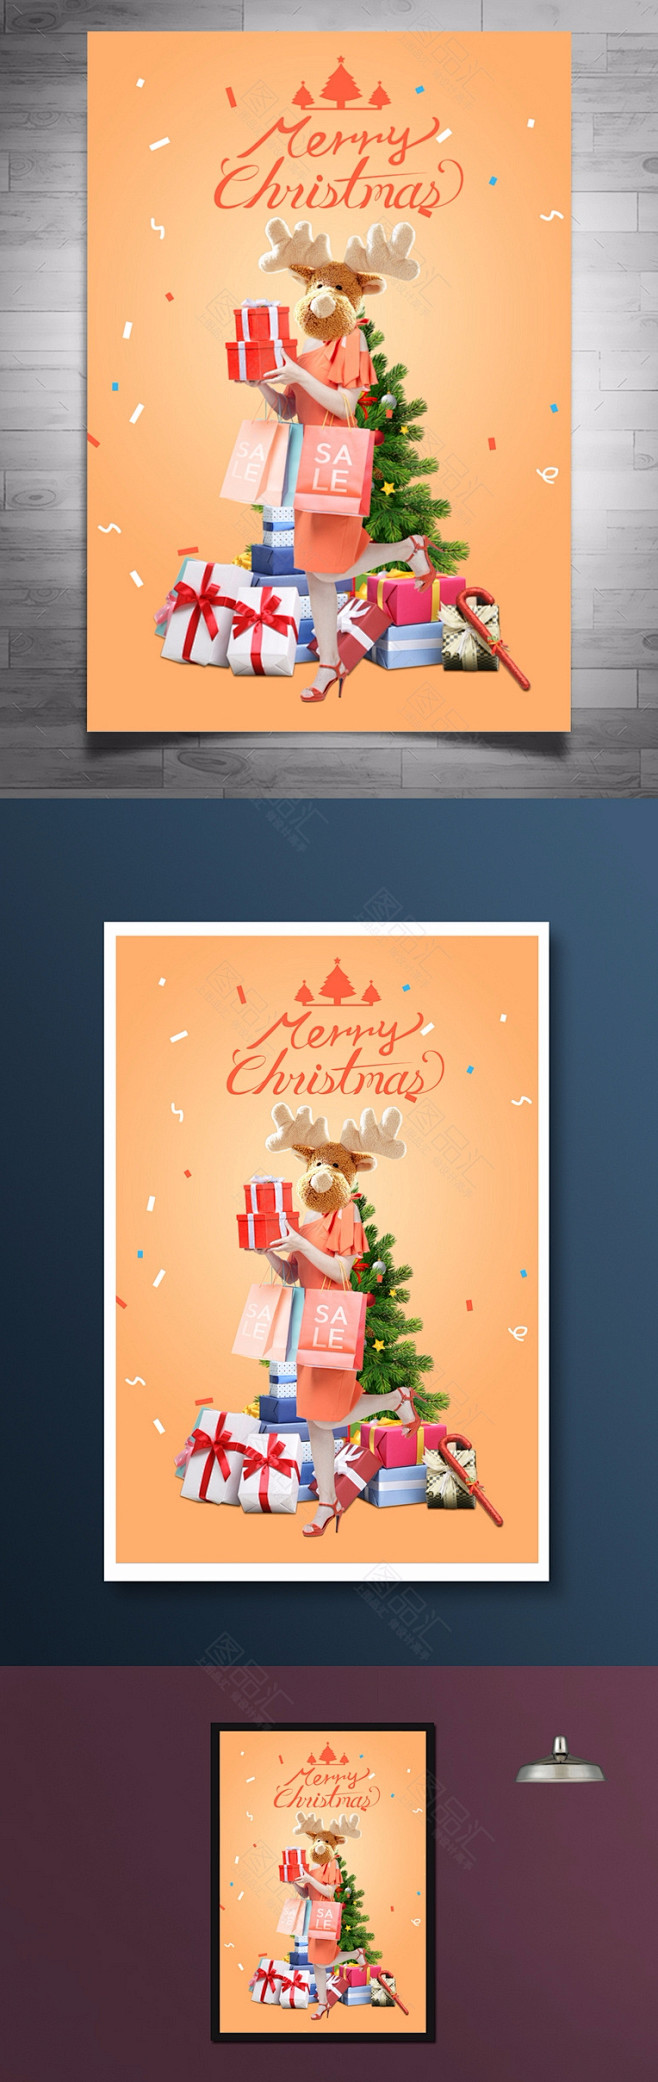 橙色时尚圣诞海报